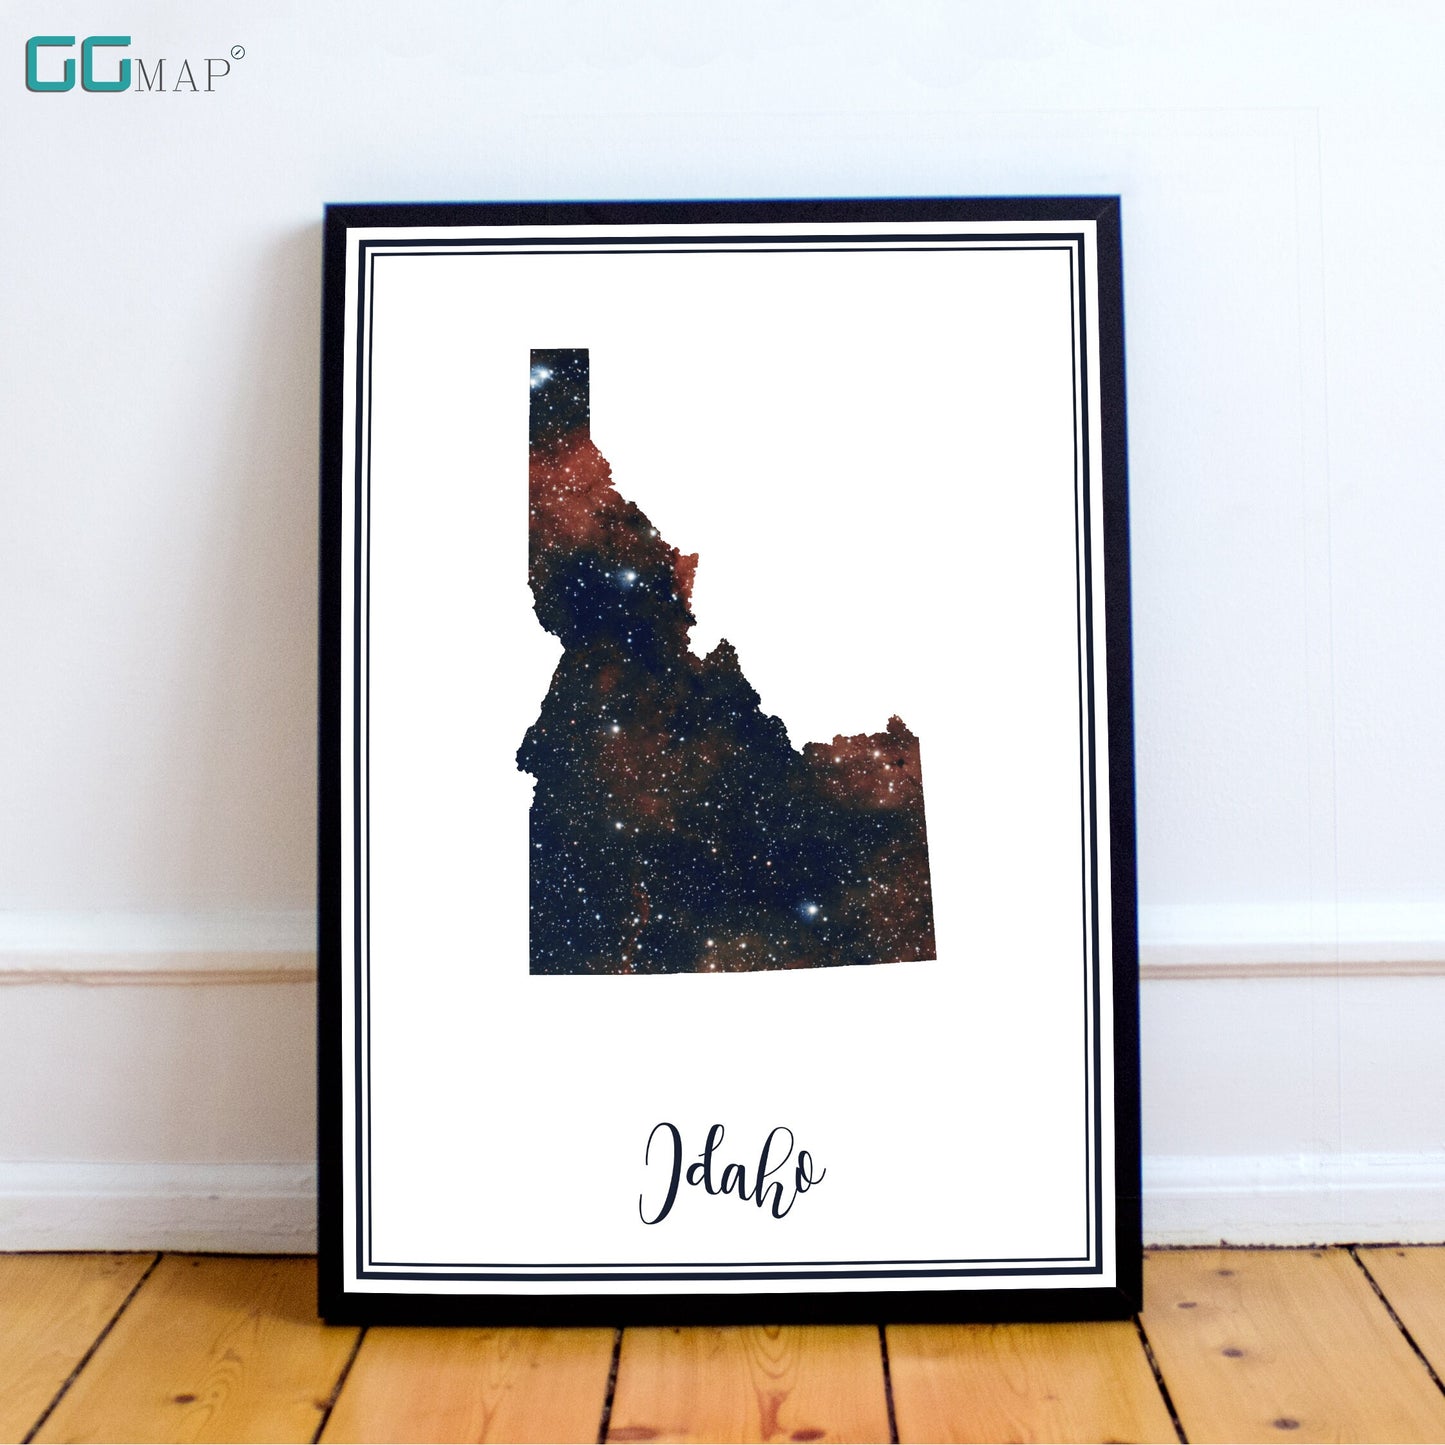 IDAHO map - Idaho heart nebula map - Travel poster - Home Decor - Wall decor - Office map -Idaho gift - GeoGIS studio